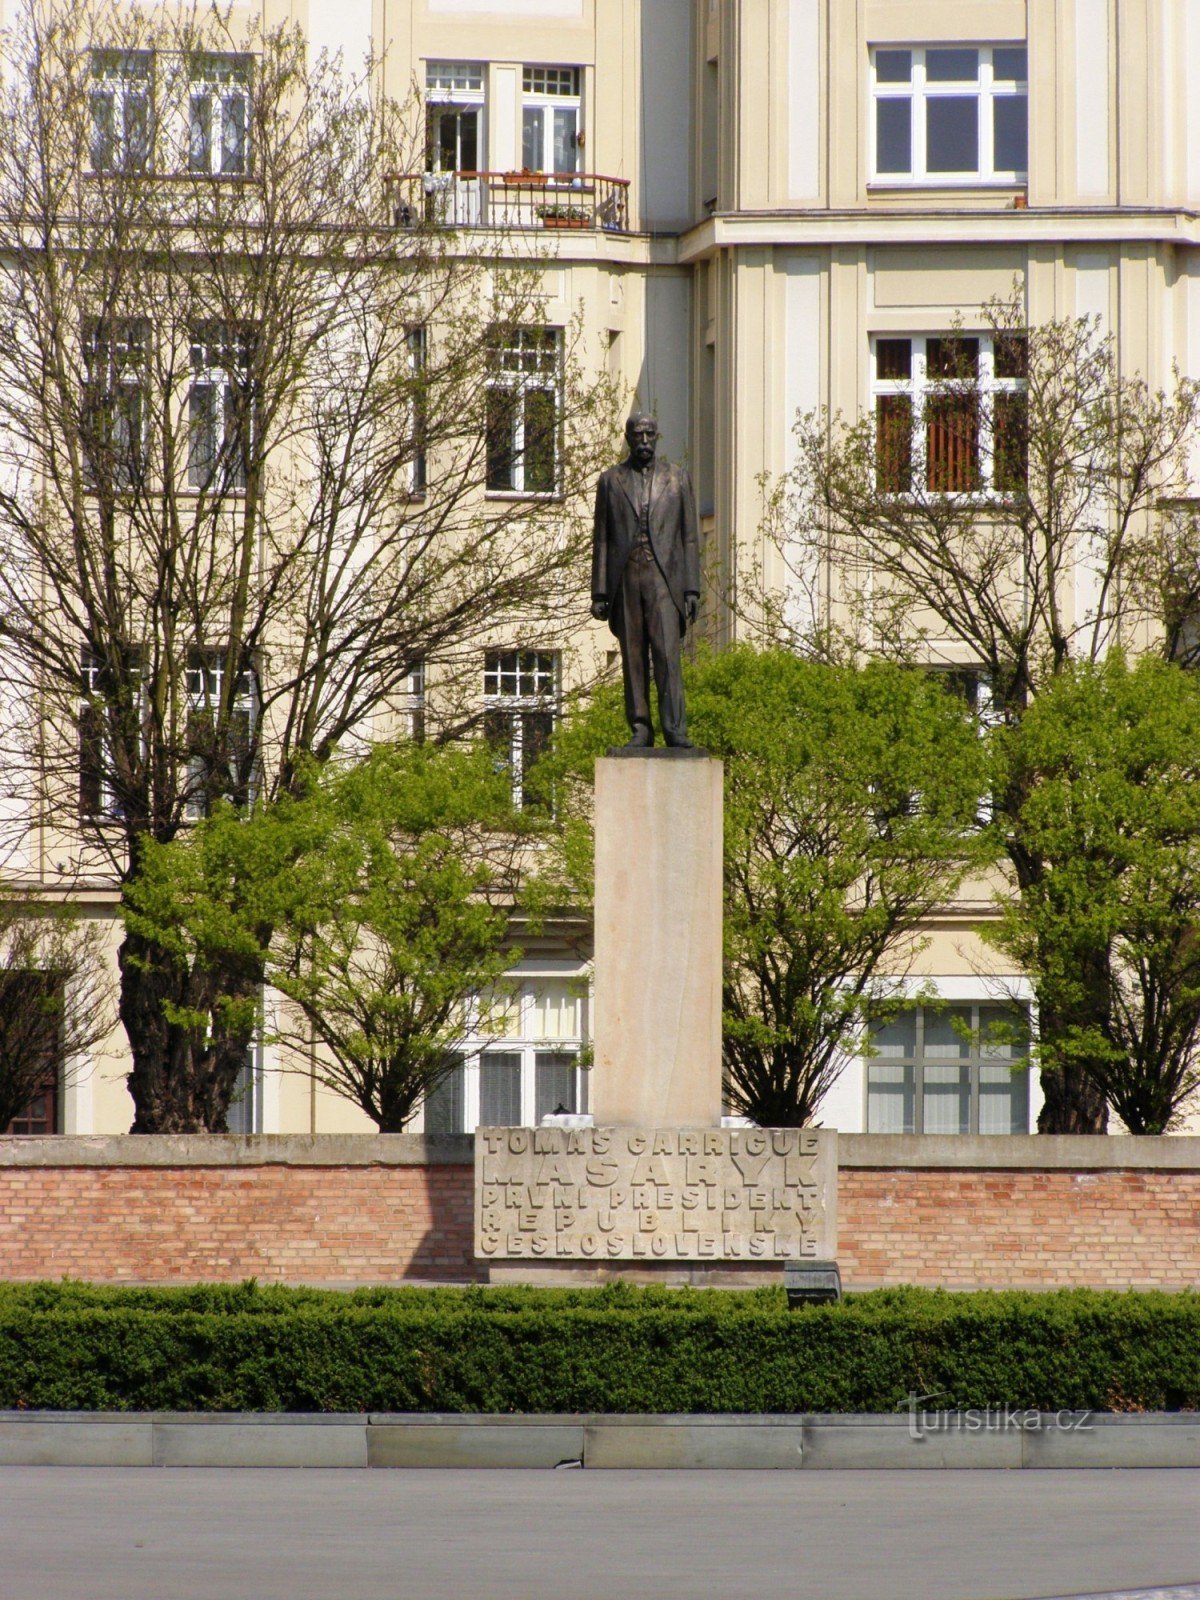 Hradec Králové - Masaryk tér